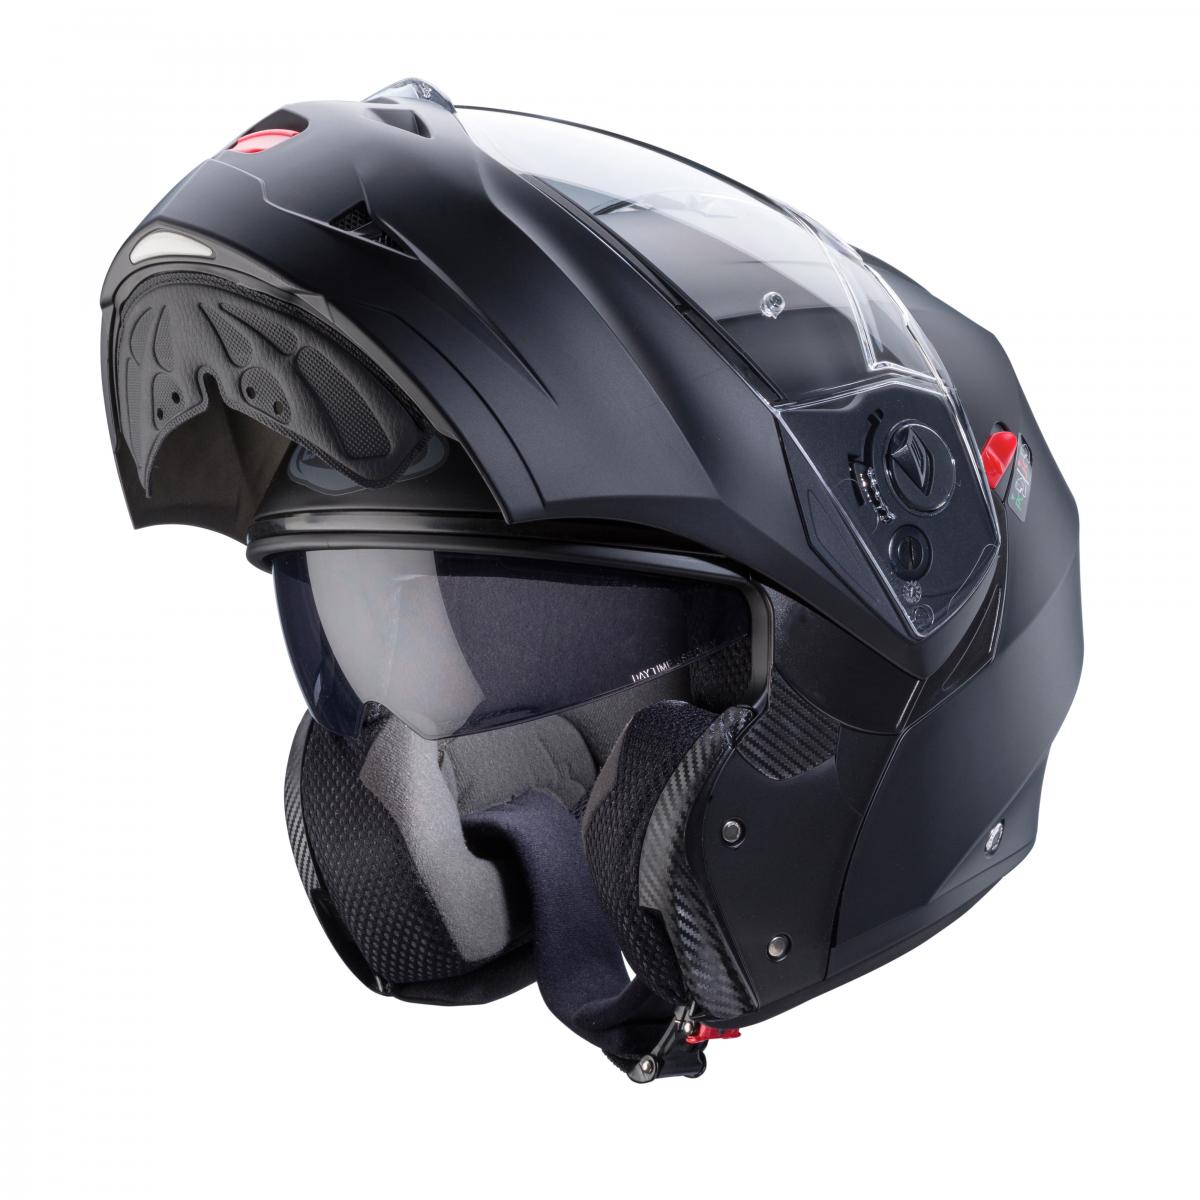 Caberg announces new Duke X flip-up motorcycle helmet f... | Visordown